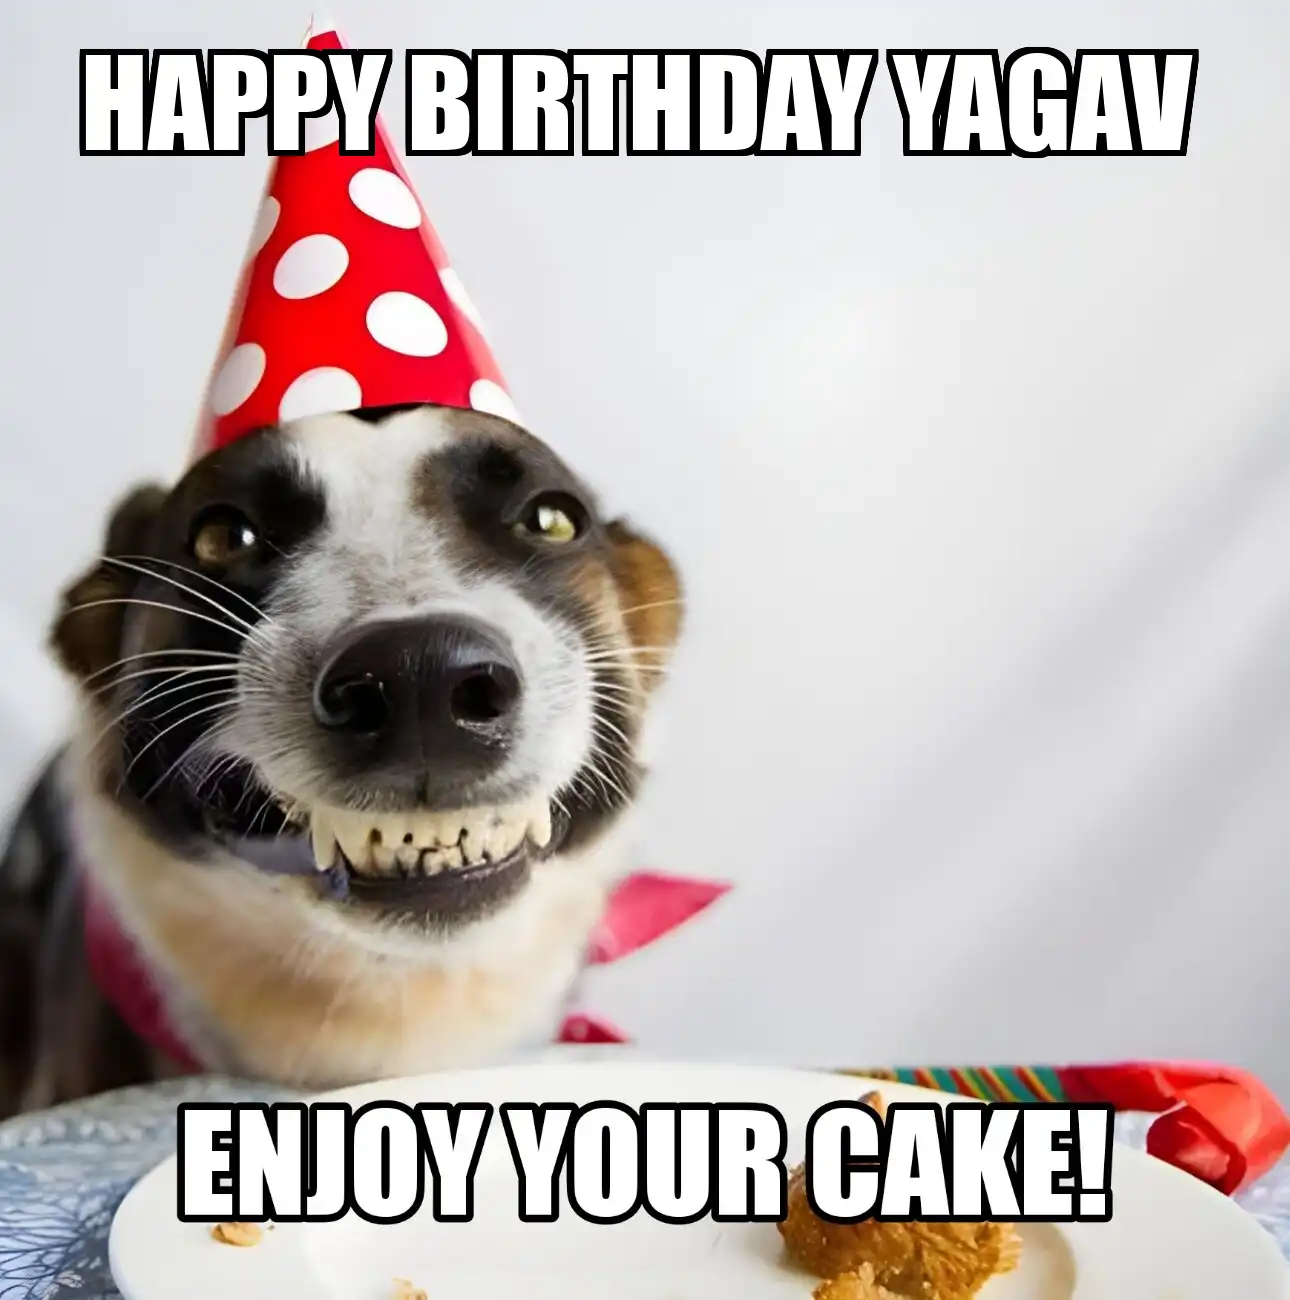 Happy Birthday Yagav Enjoy Your Cake Dog Meme